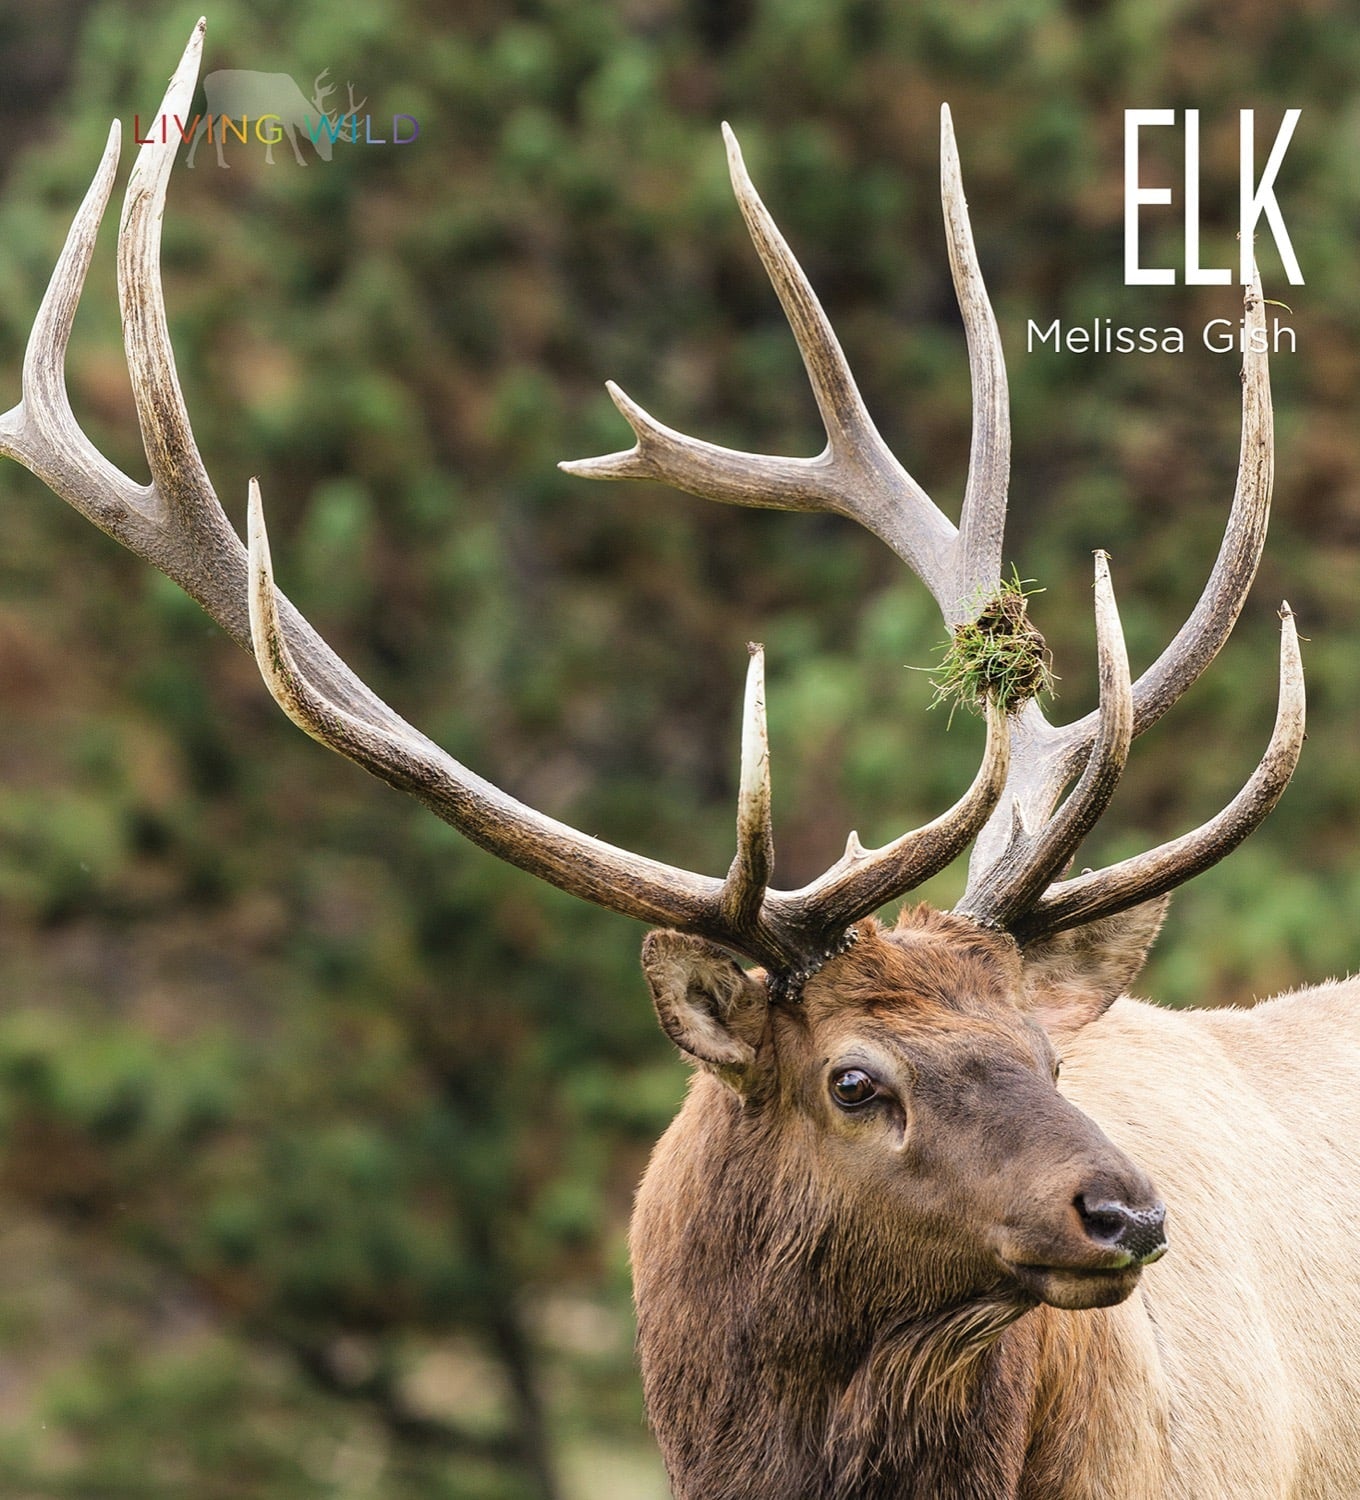 Living Wild - Classic Edition: Elk